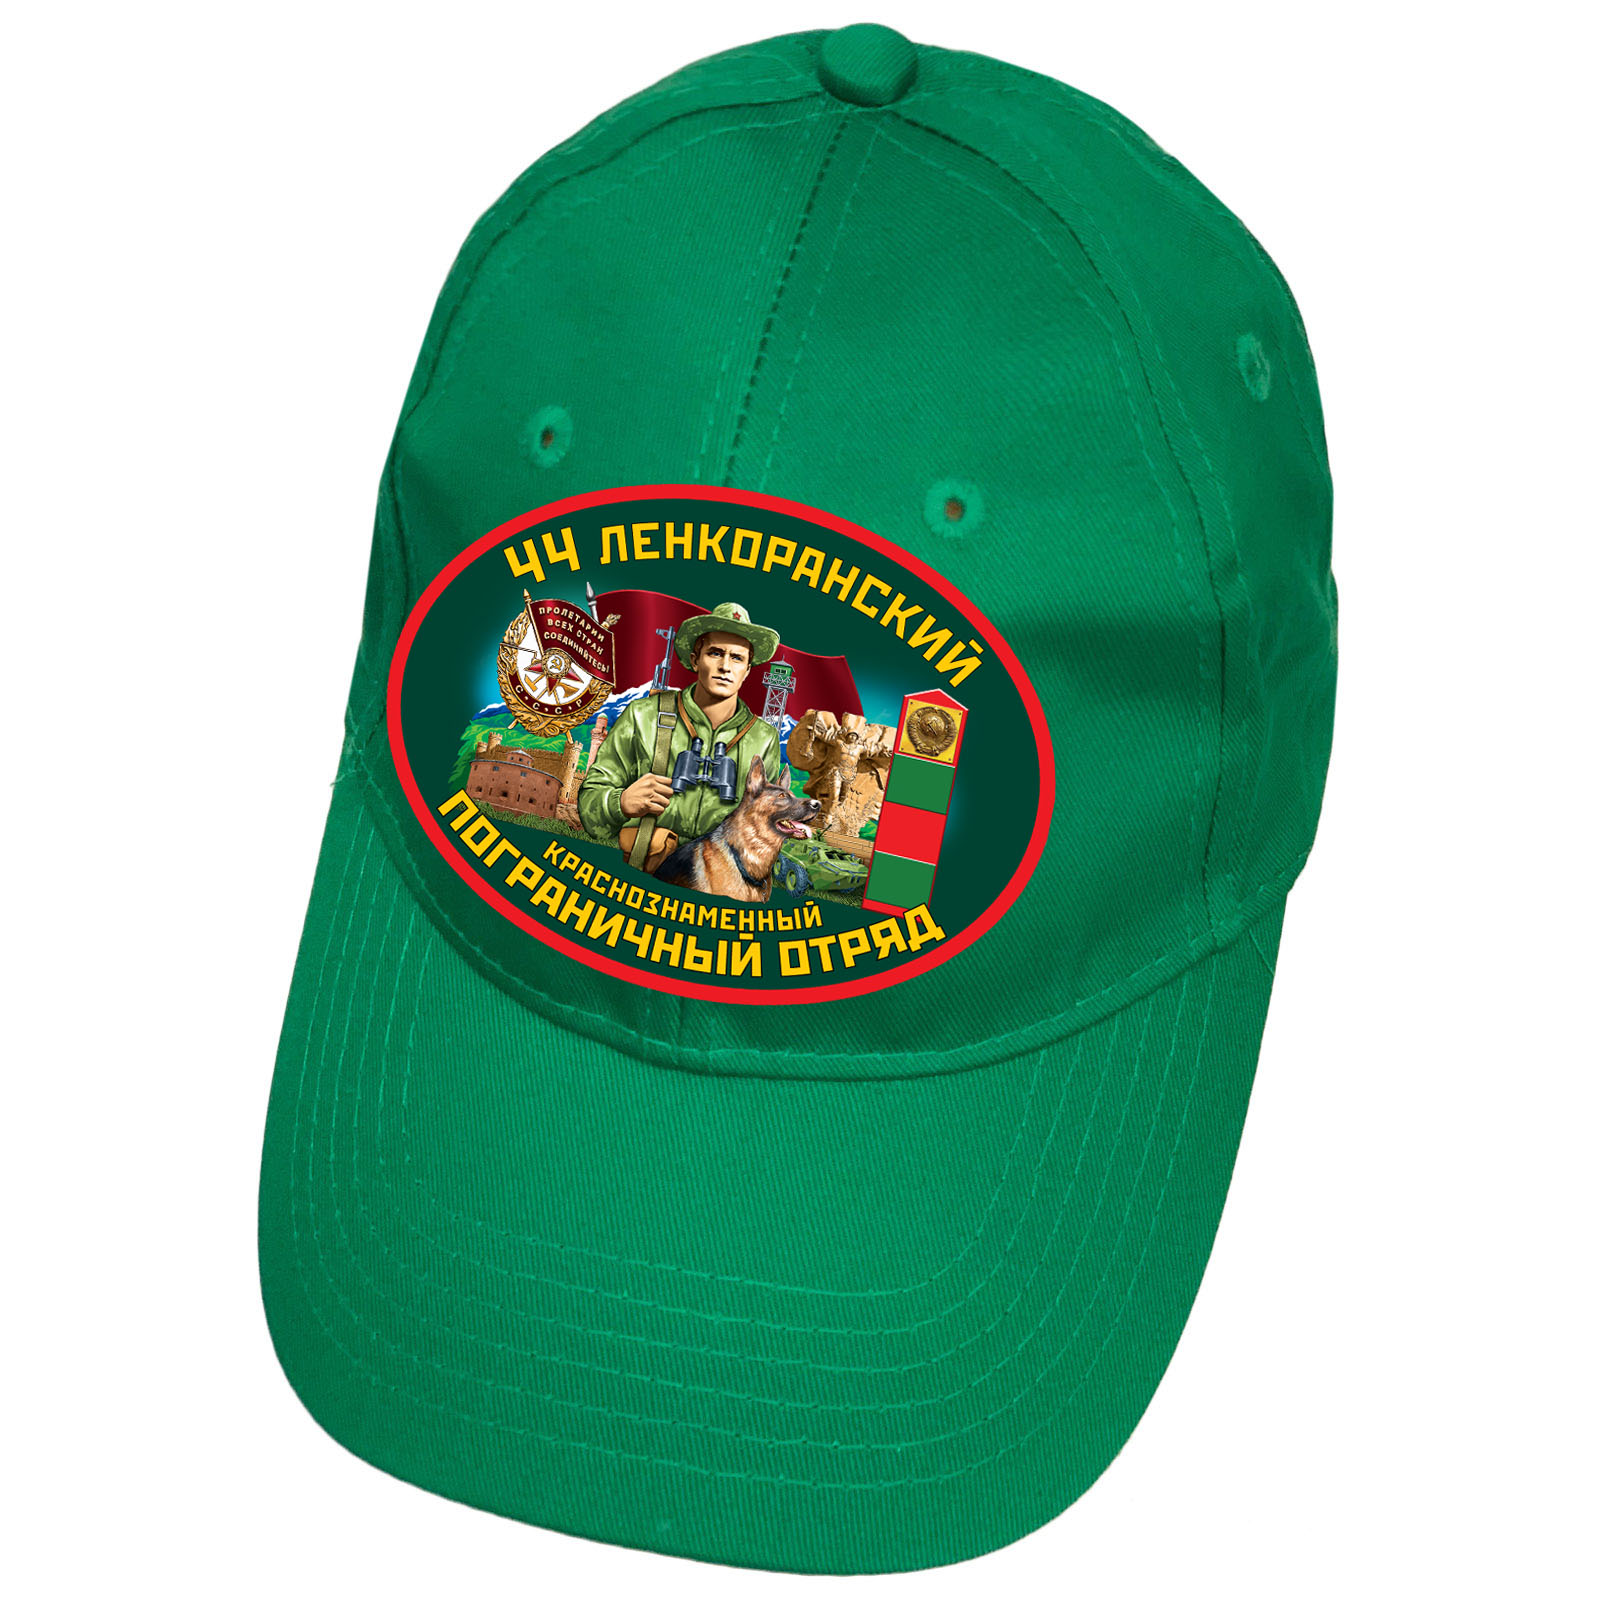 Зелёная кепка "44 Ленкоранский погранотряд"